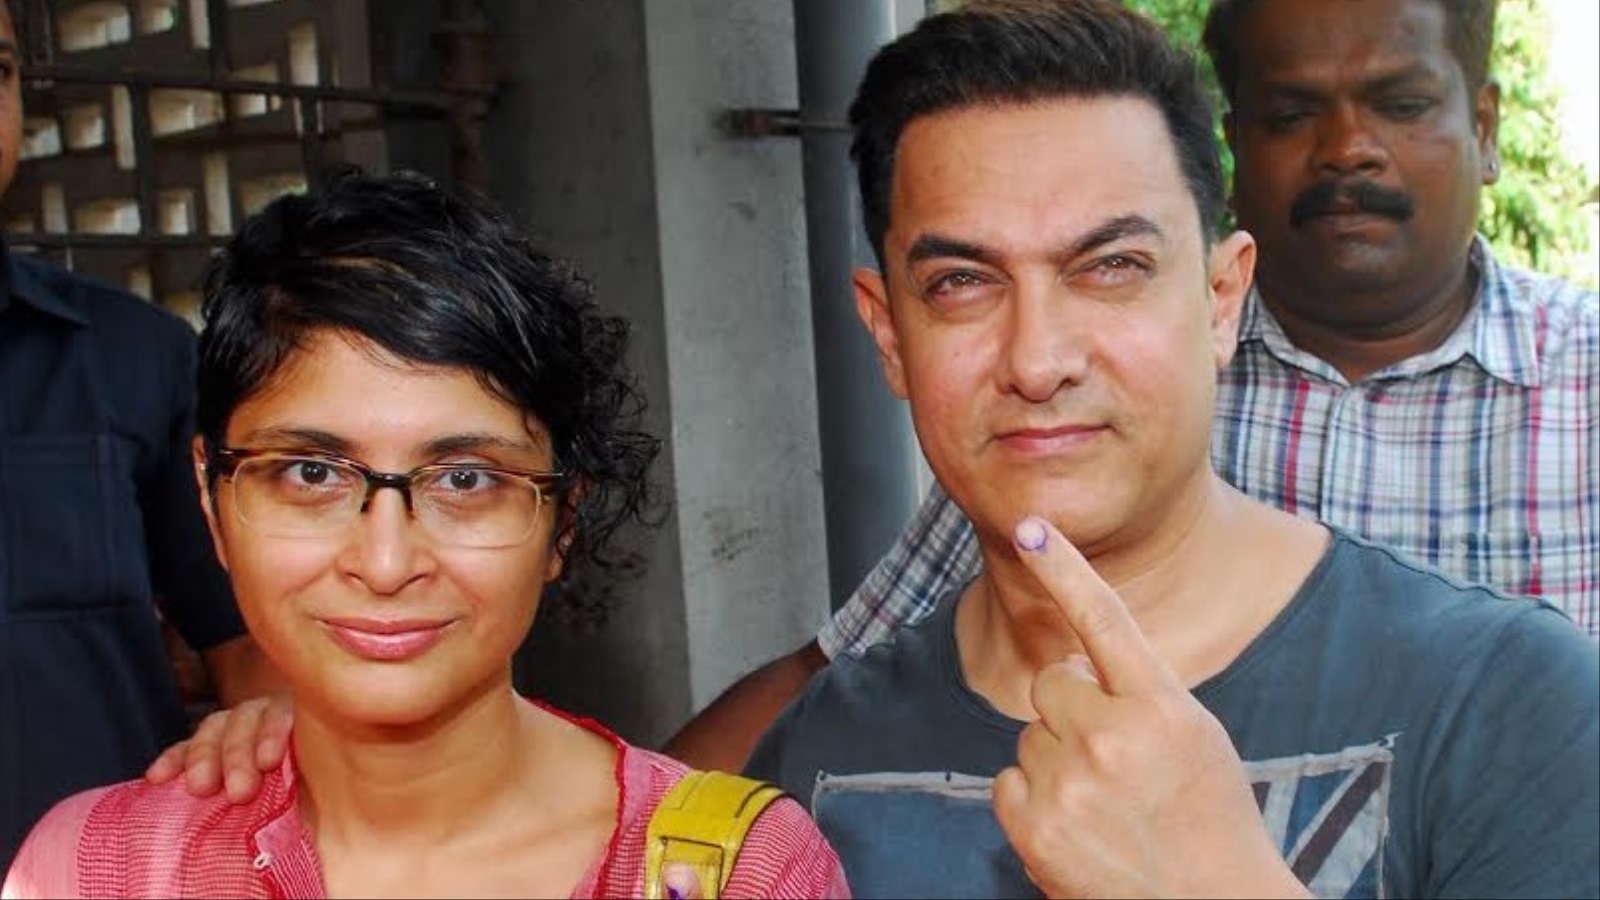 النجم السينمائي عامر خان وزوجته بعد اقتراعهما في الانتخابات الأخيرة (الجزيرة)